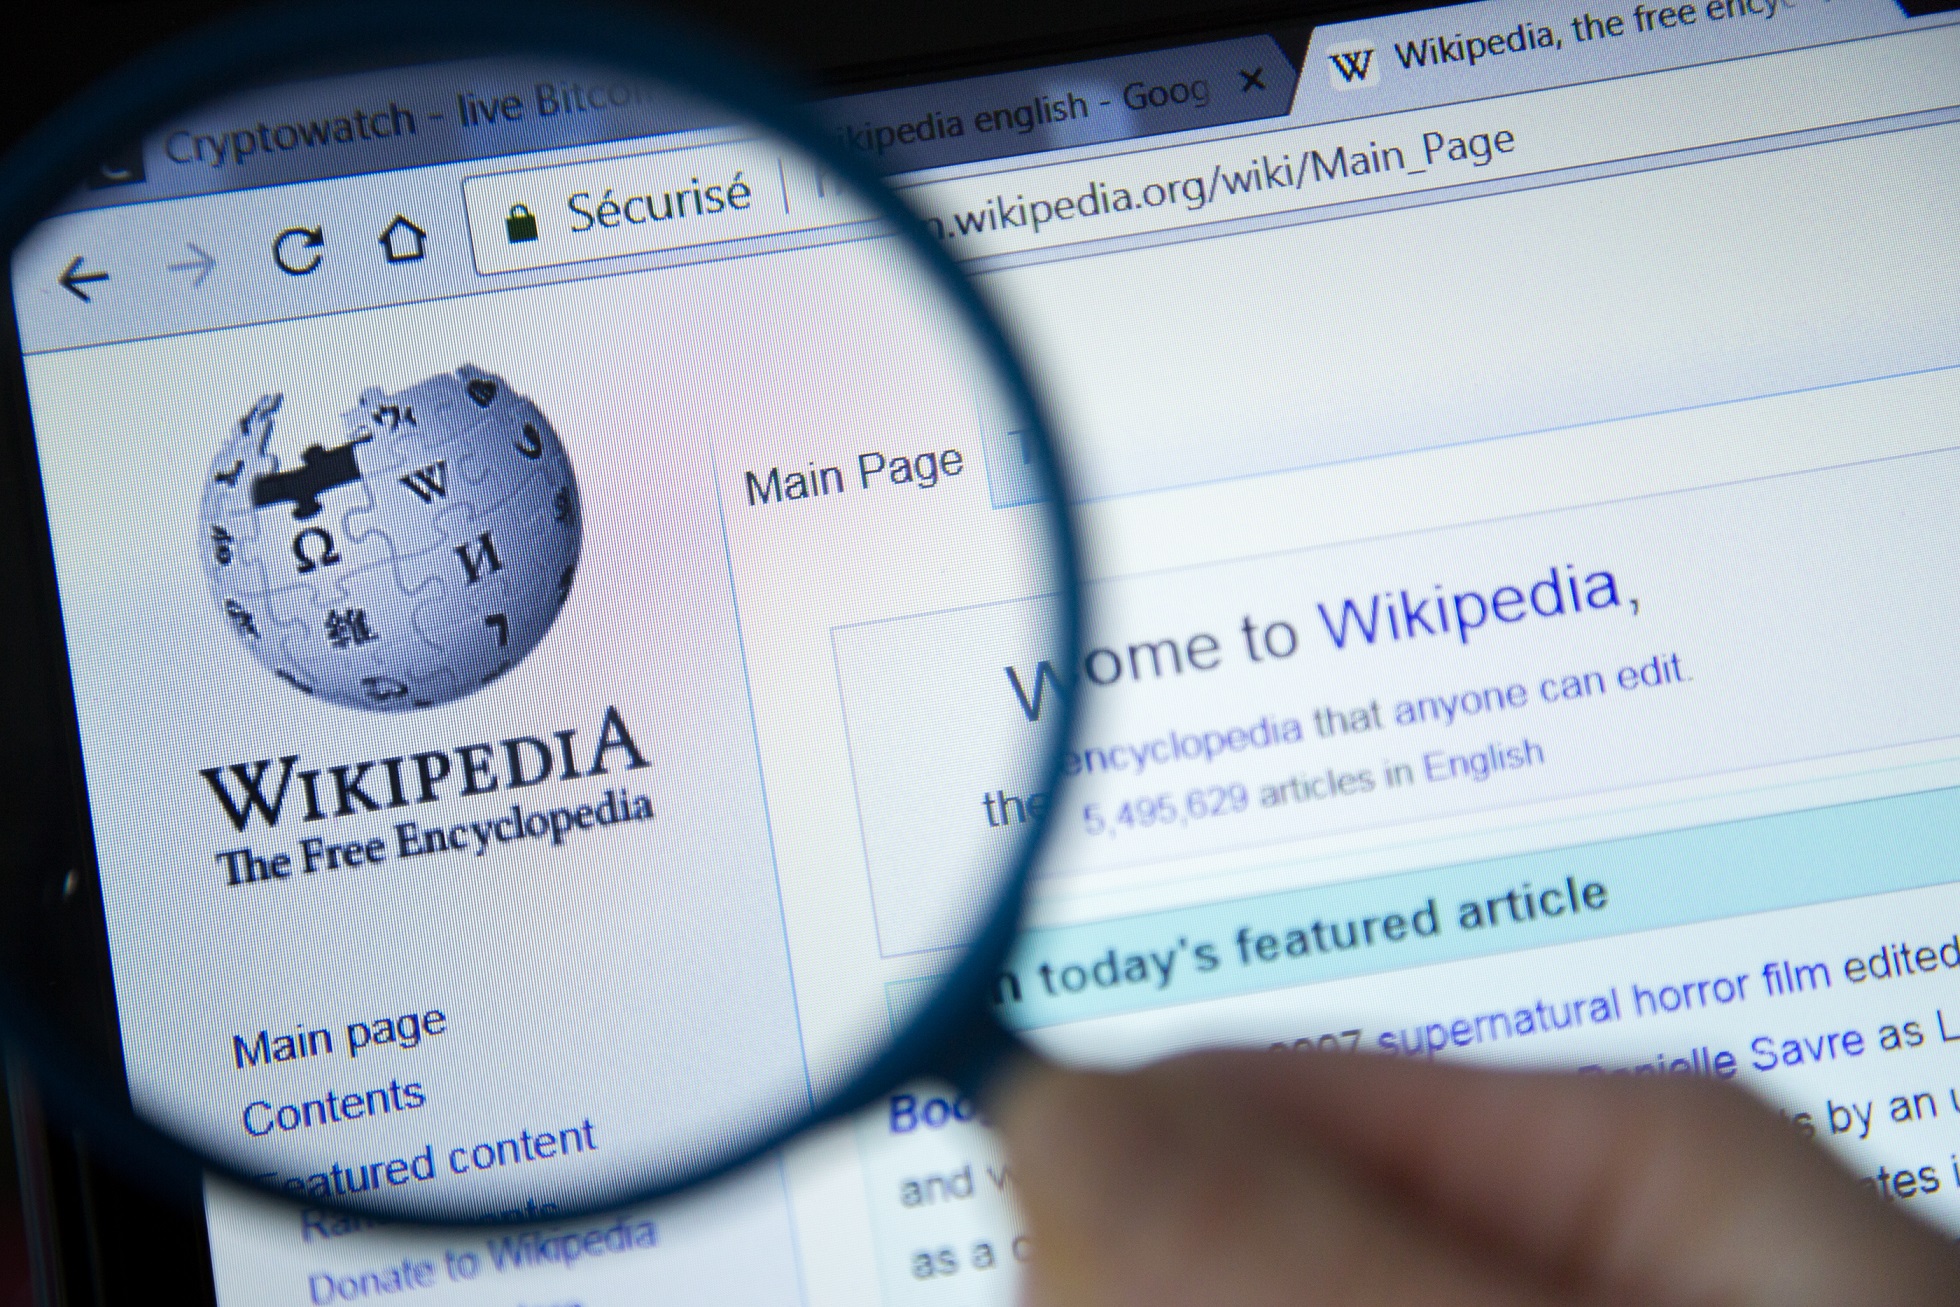 ウィキペディア（Wikipedia）の記事を削除する方法とは？